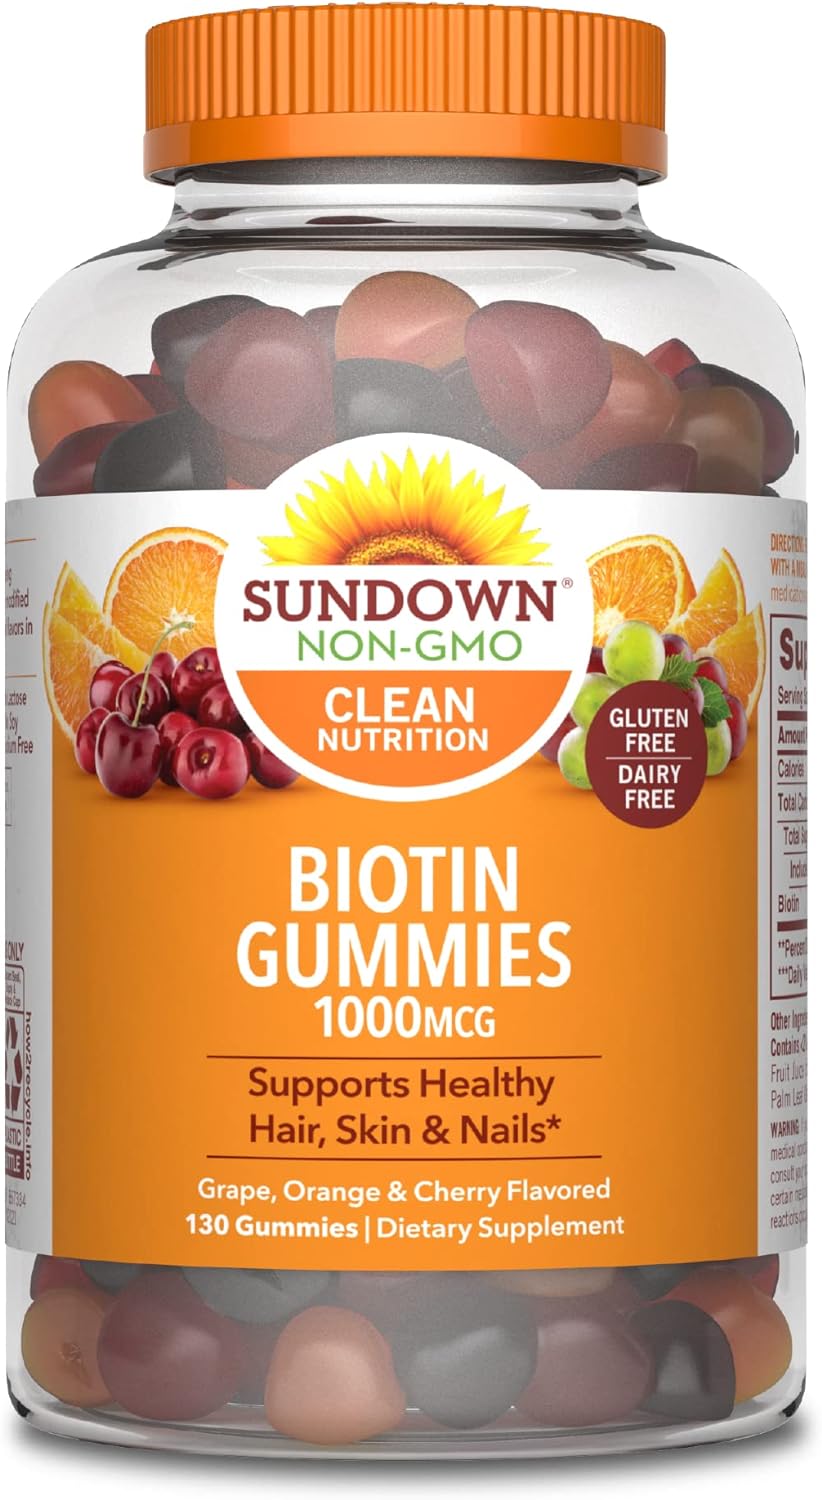 Sundown Biotin Gummies , Supports Healthy Hair, Skin & Nails, Non-GMO, Free of Gluten, Dairy, Artificial Flavors, 1000 mcg, 130 Gummies